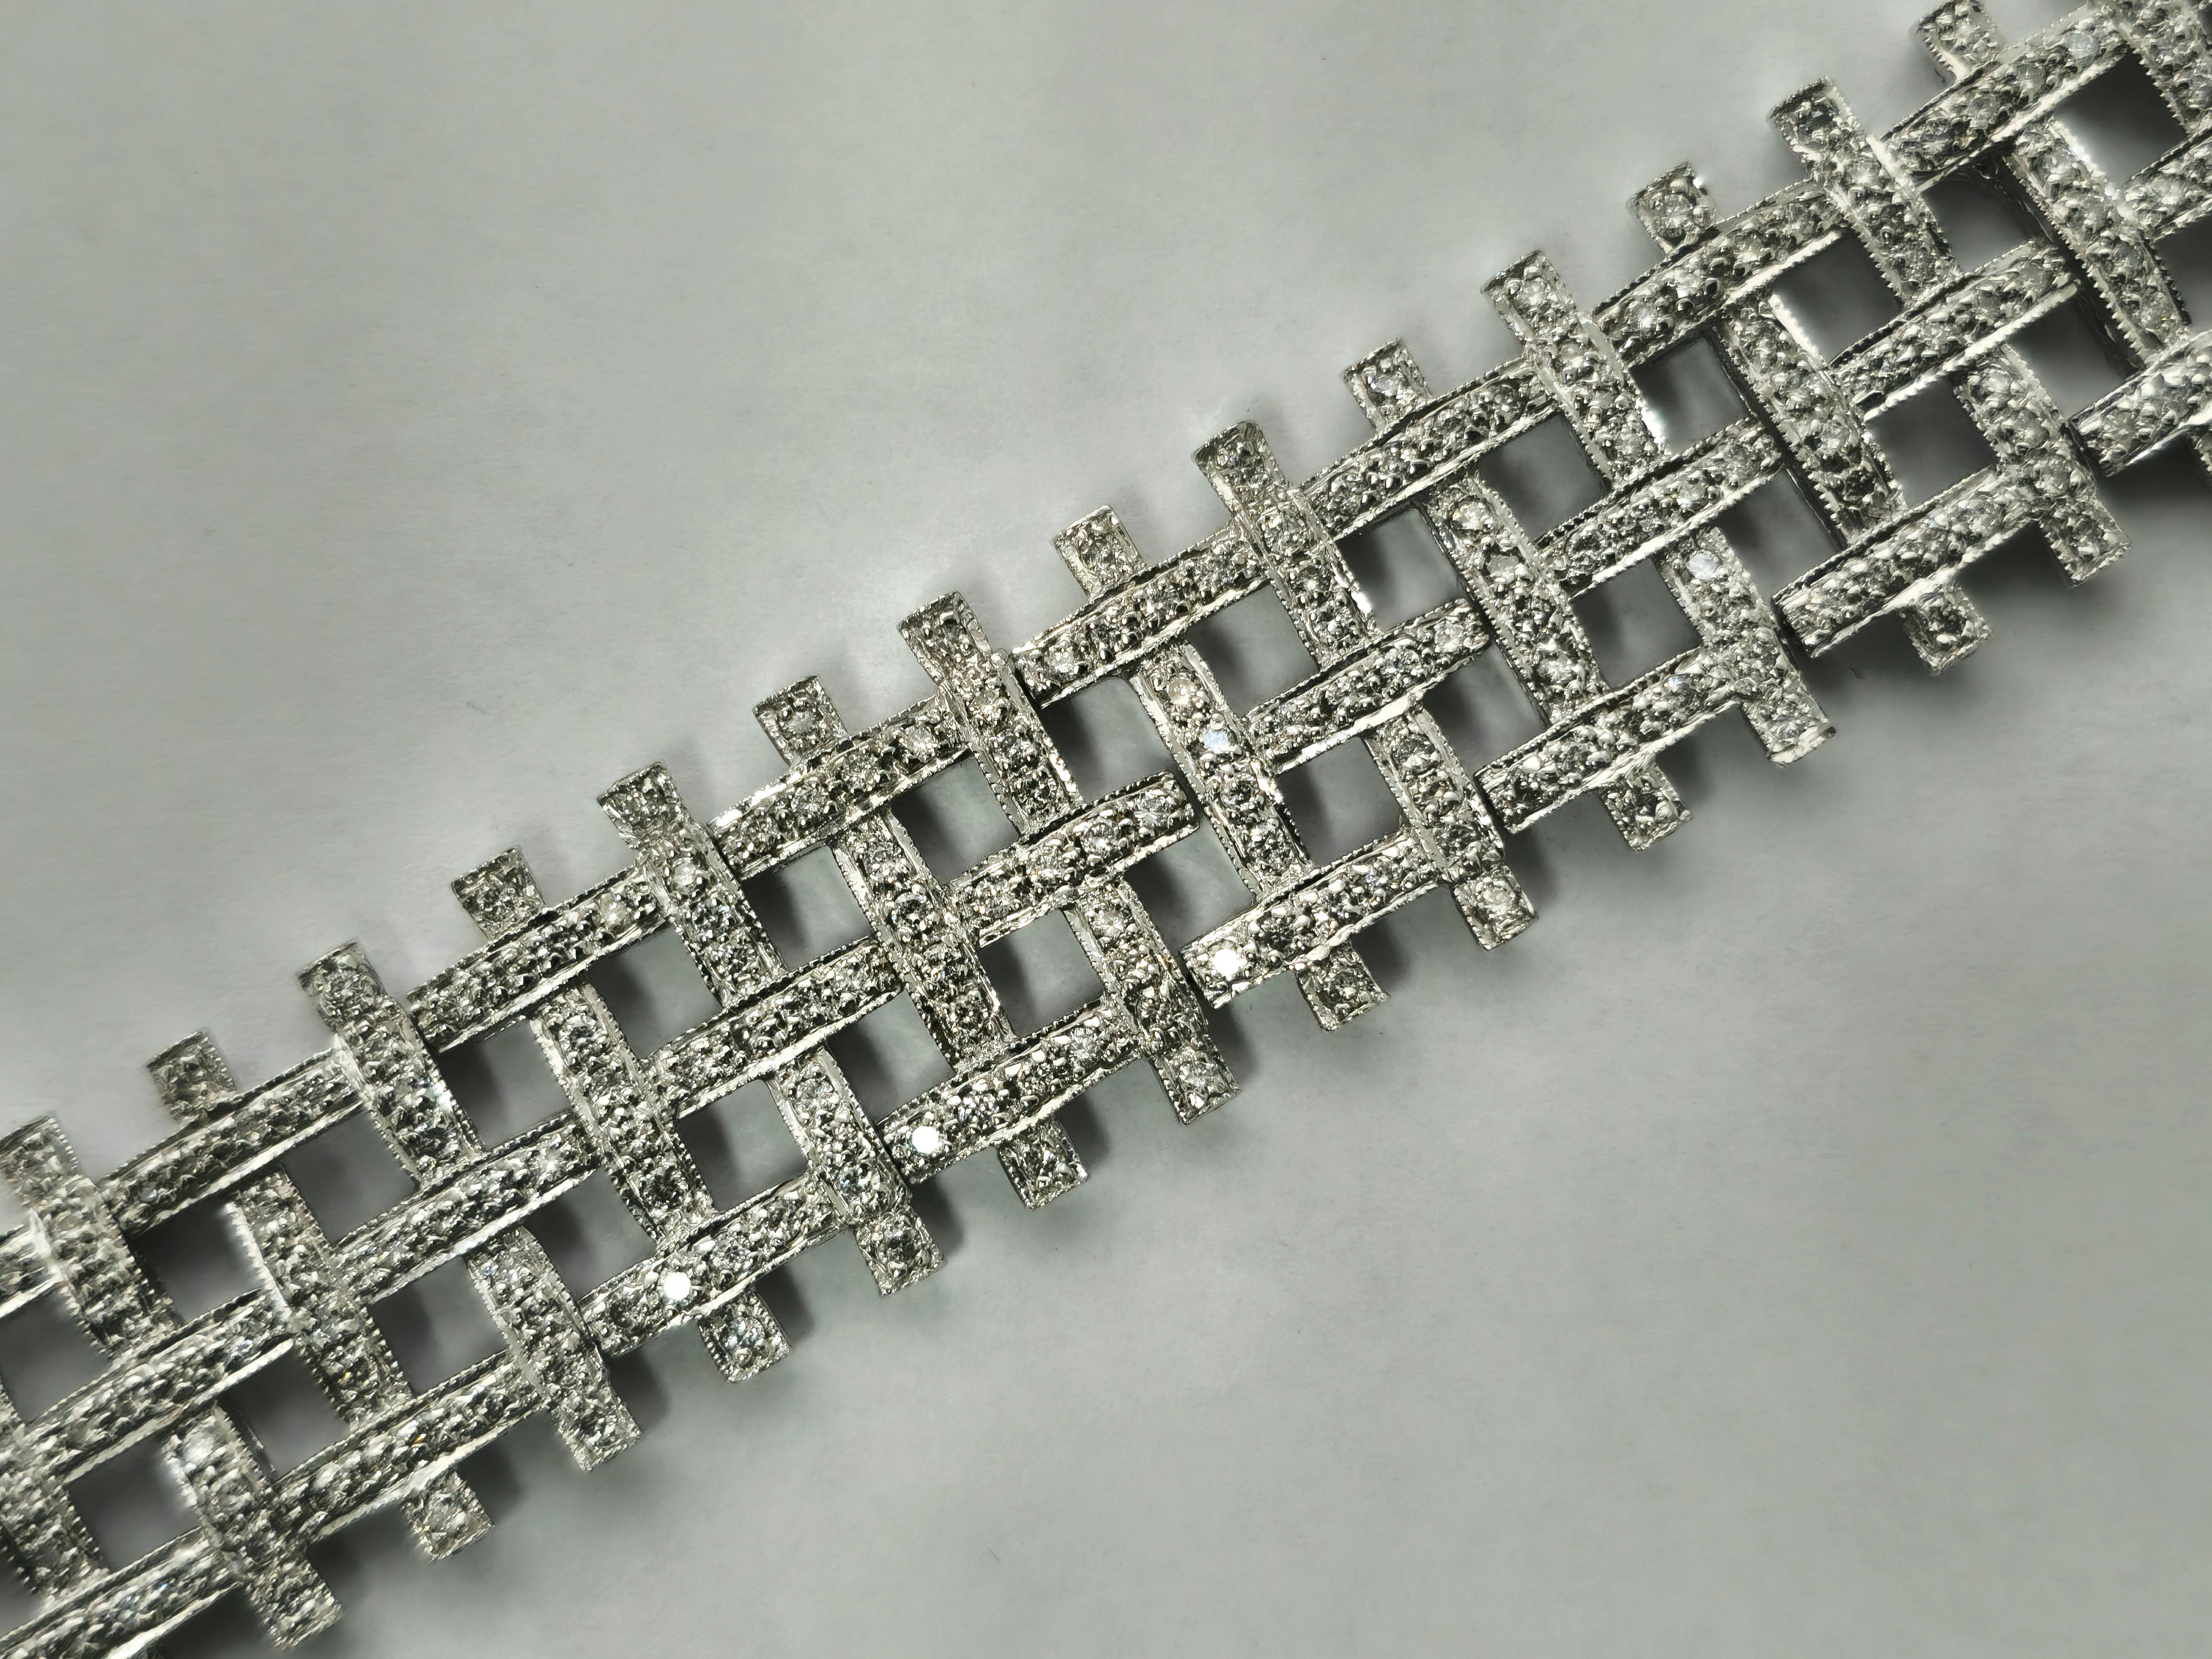 Découvrez une élégance inégalée avec notre collier de diamants en or blanc 14k. Orné de diamants de taille ronde de pureté SI-SI2 et de couleur F-G, ce collier présente une brillance et un éclat naturels. Fabriqué avec des pierres 100% naturelles